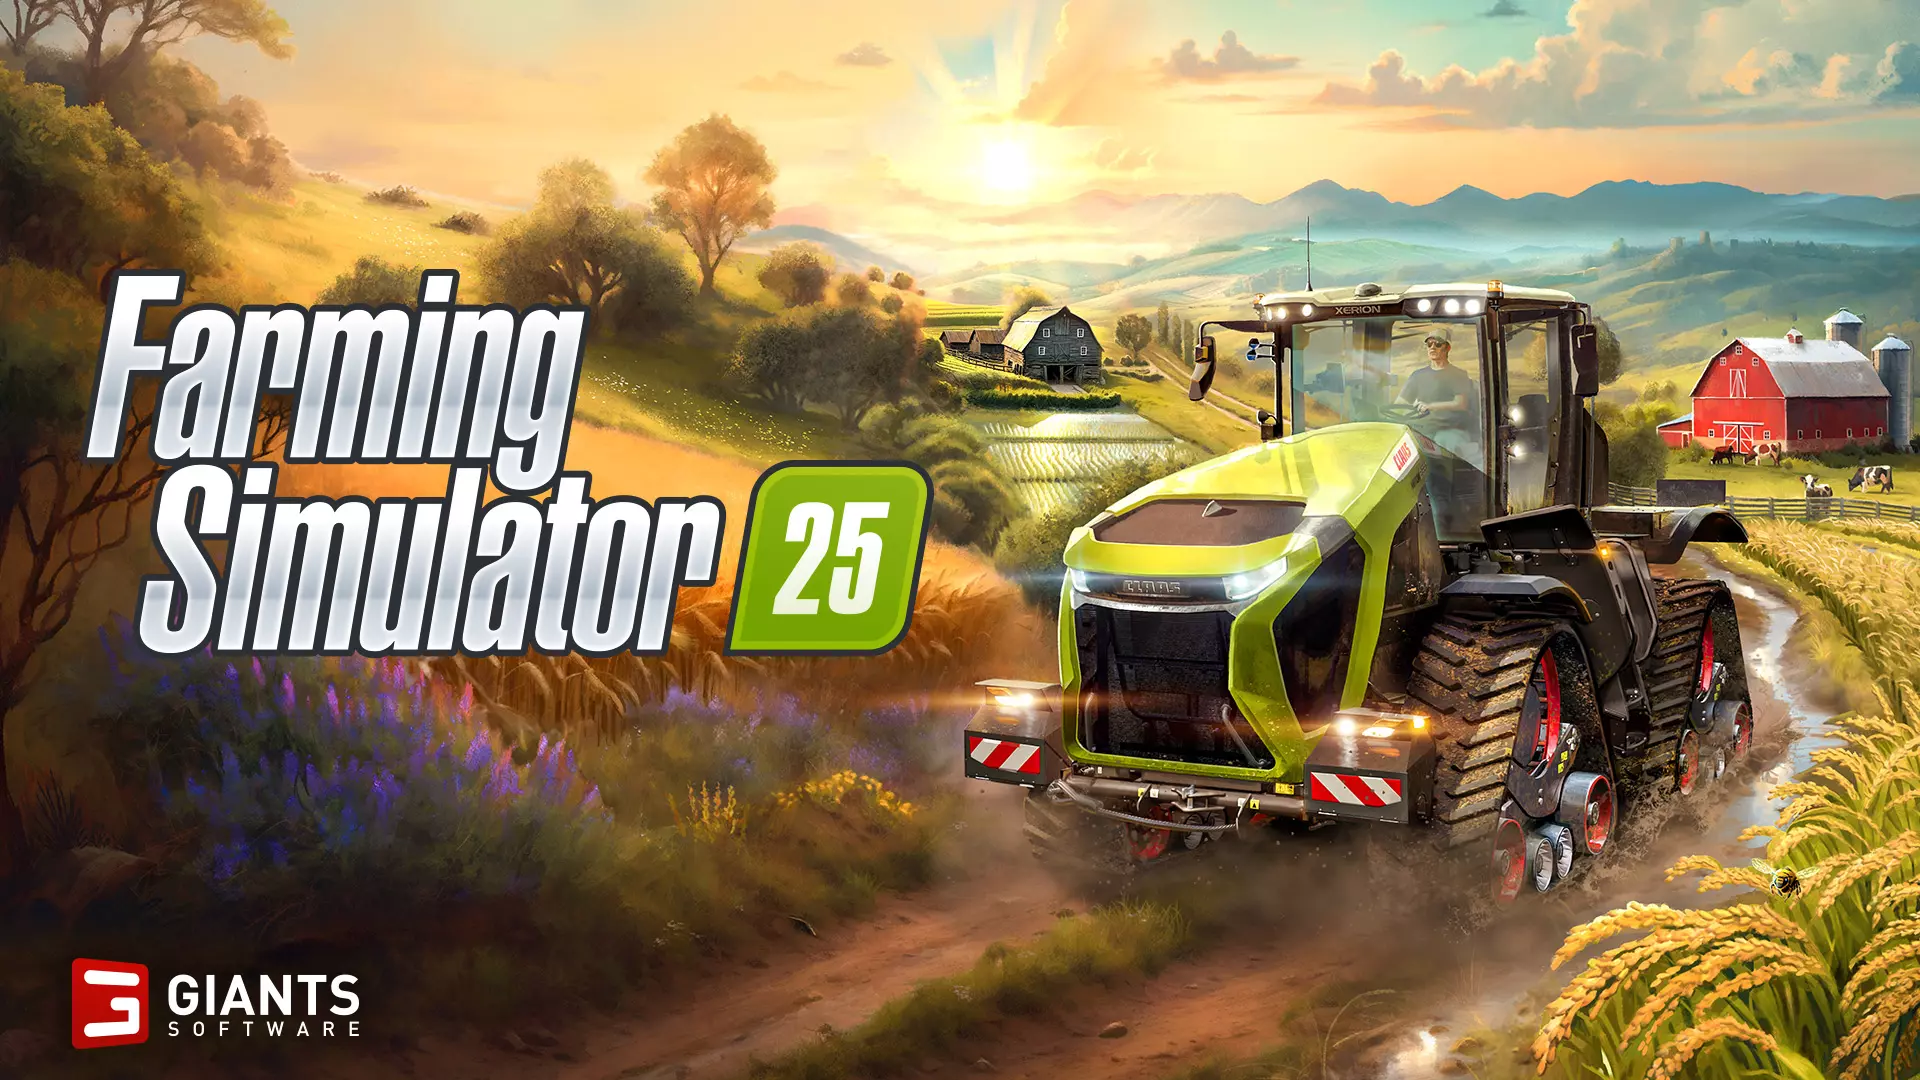 Connect Modding Farming Simulator 25 - A história e as melhorias